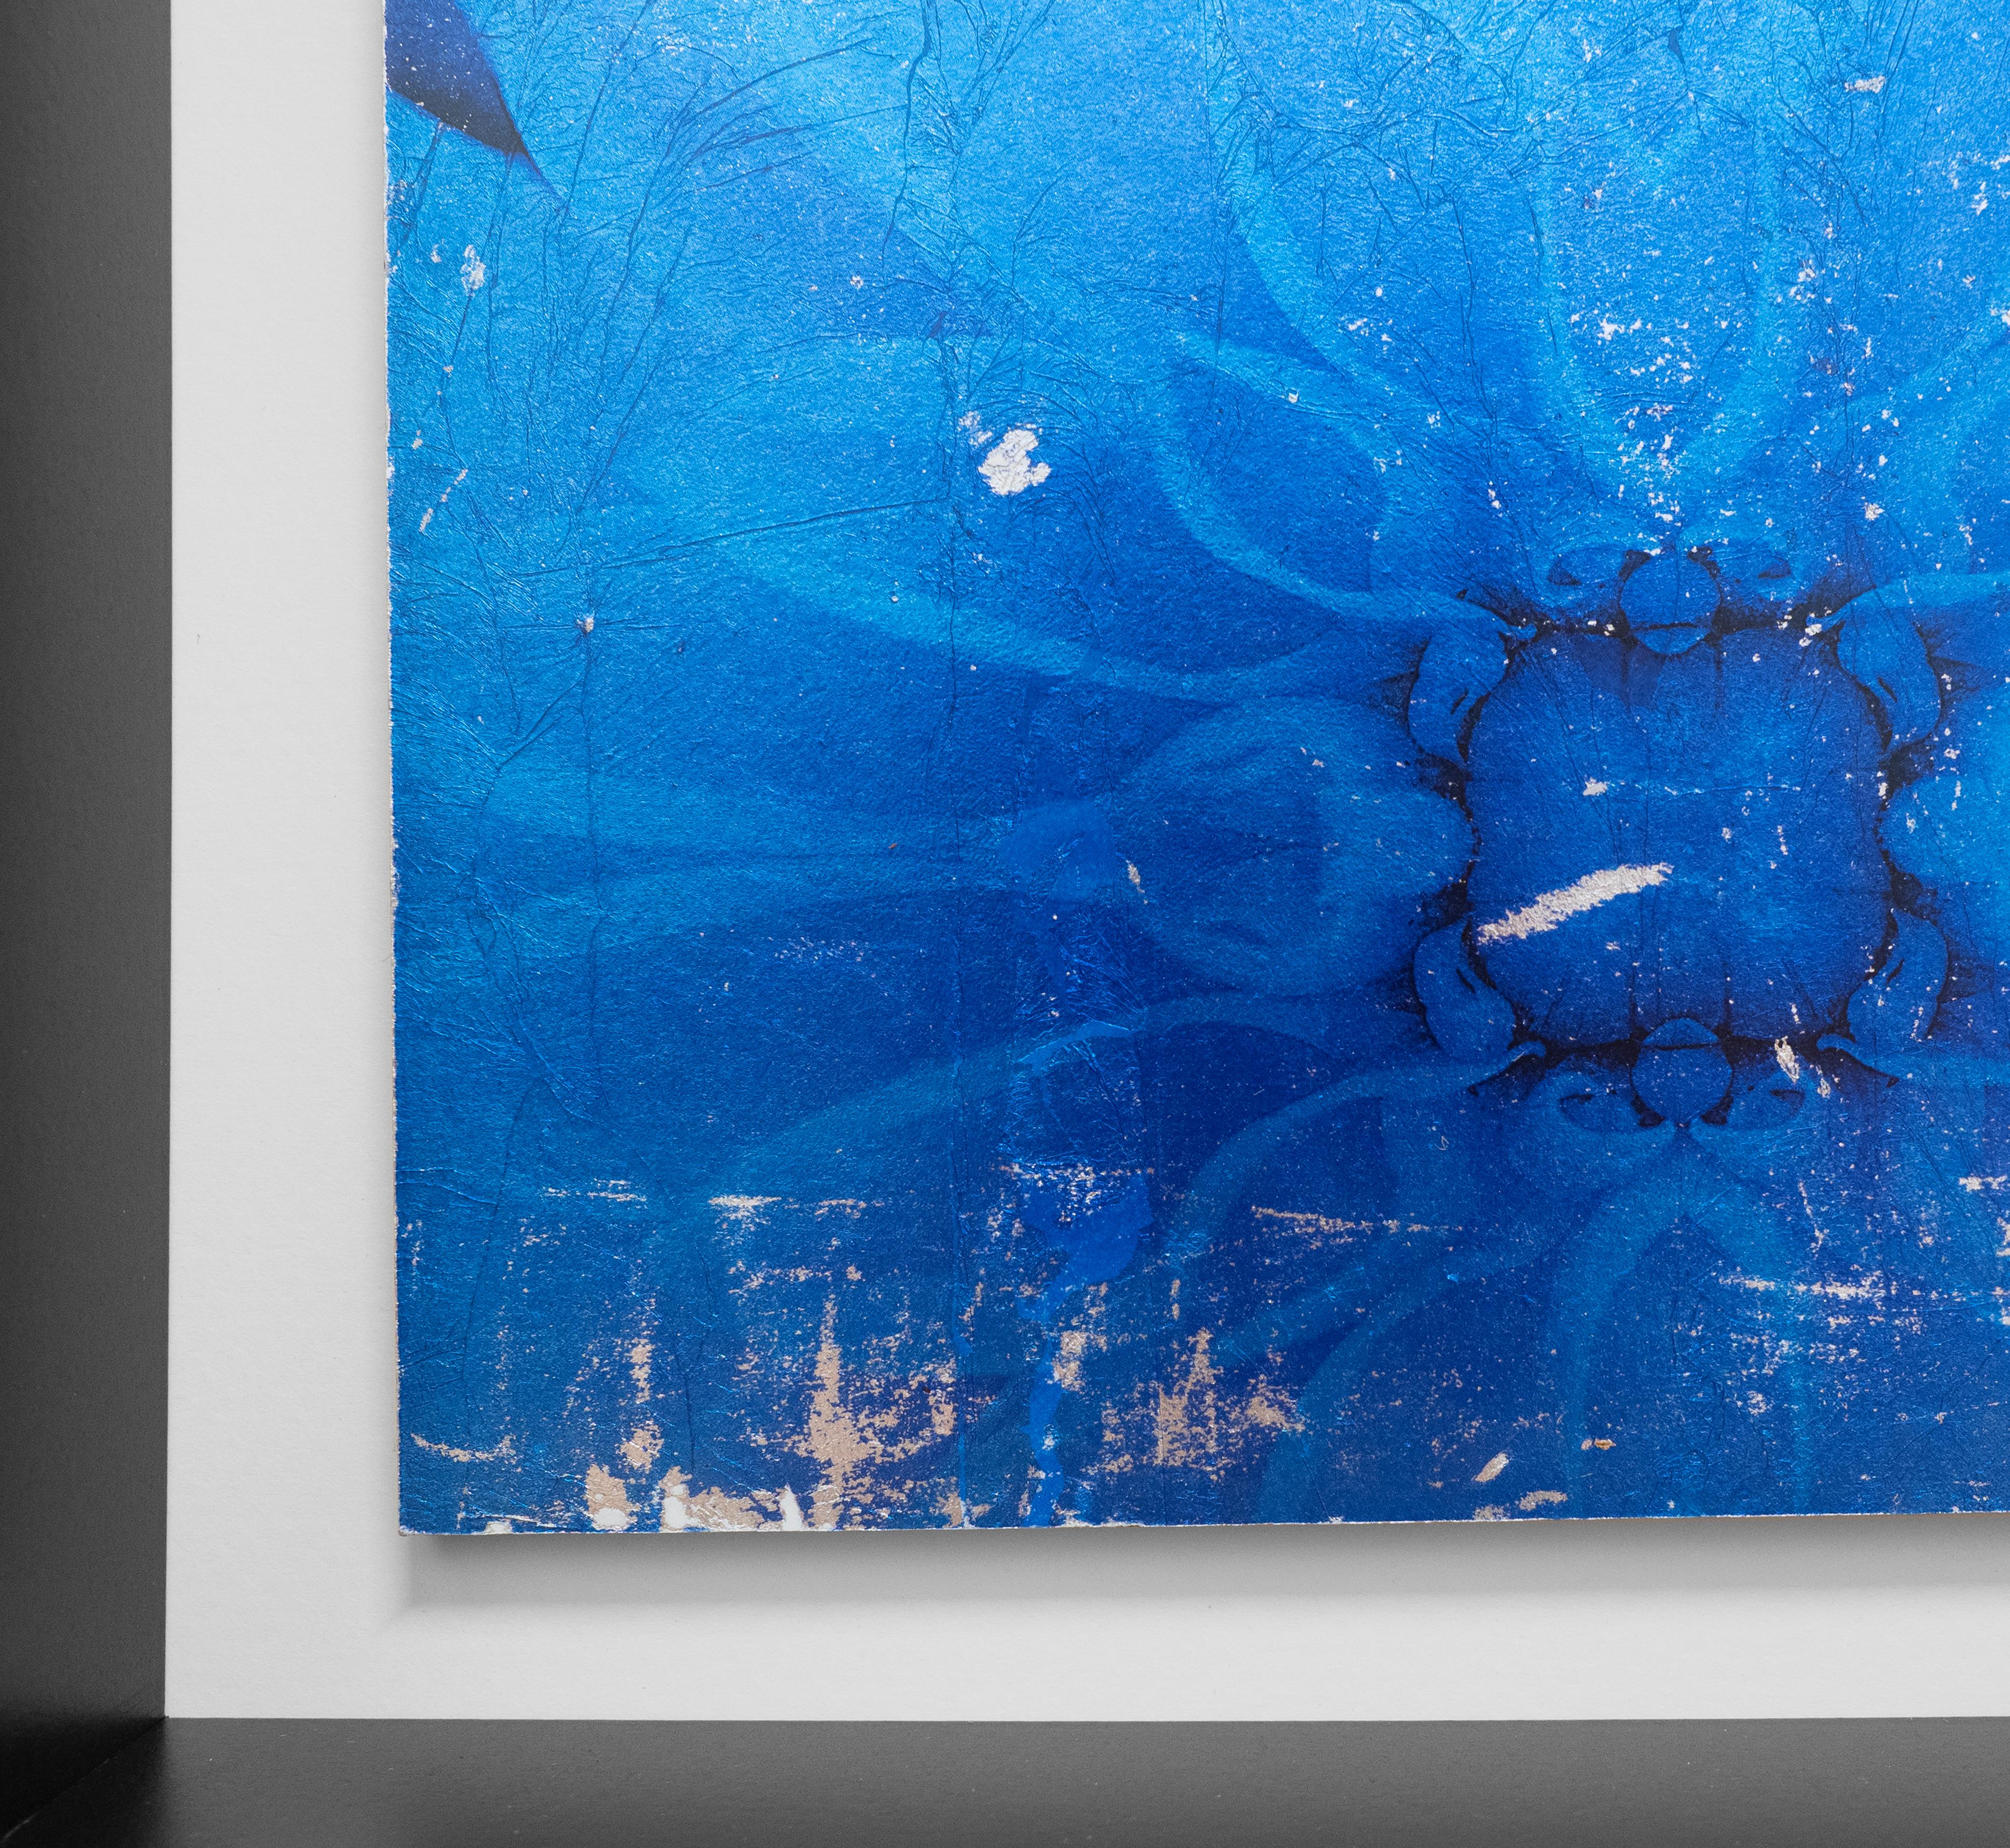 Individual 14 von Mark Jackson ist ein wunderschönes gerahmtes Mixed-Media-Werk mit einer blauen Blume. Jackson druckt seine Fotografien auf Blattsilber und klebt sie dann auf eine Holzplatte.